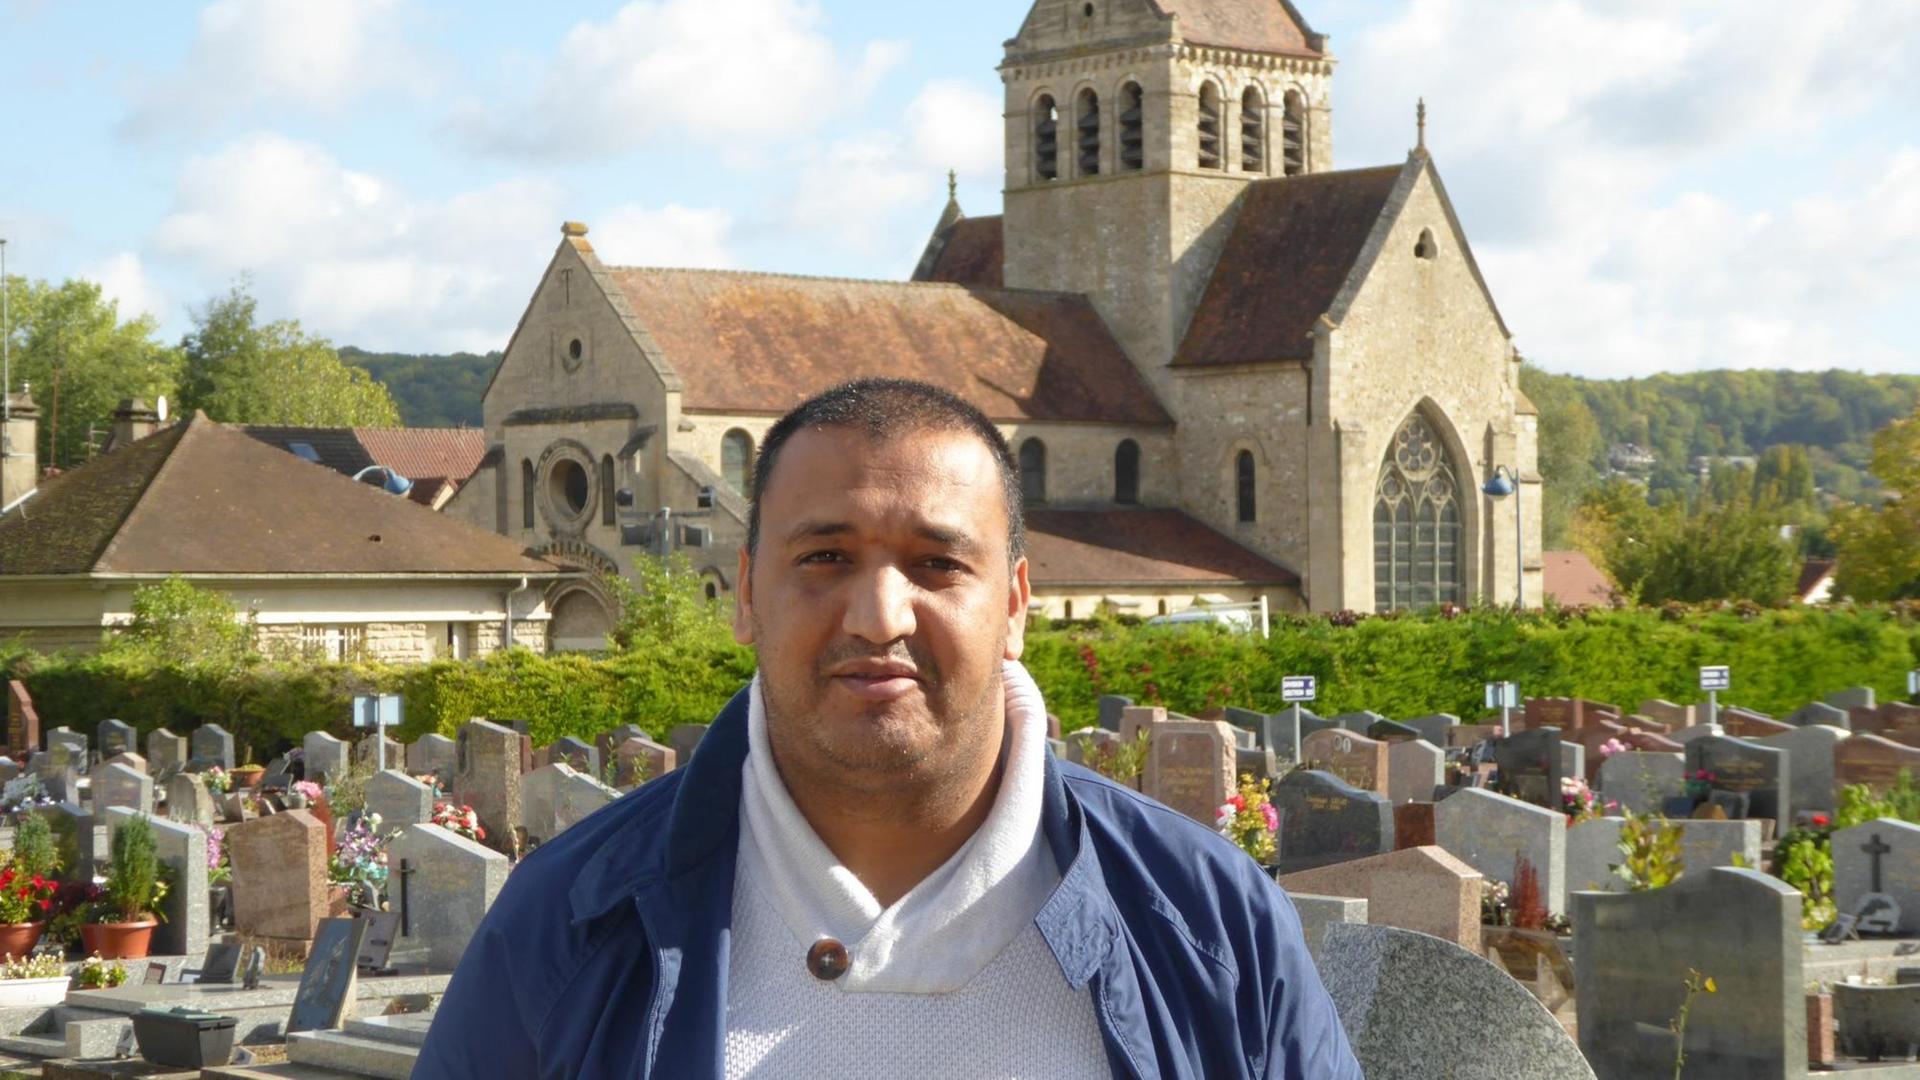 In Frankreich wollen immer mehr Muslime islamkonform bestattet werden. Die wenigsten Friedhöfe sind darauf vorbereitet. Moschee-Direktor Abdelaziz El Jaouhari will die Bürgermeister überzeugen, in Zukunft auch muslimische Grabfelder anzulegen. Der Staat befürwortet dies.